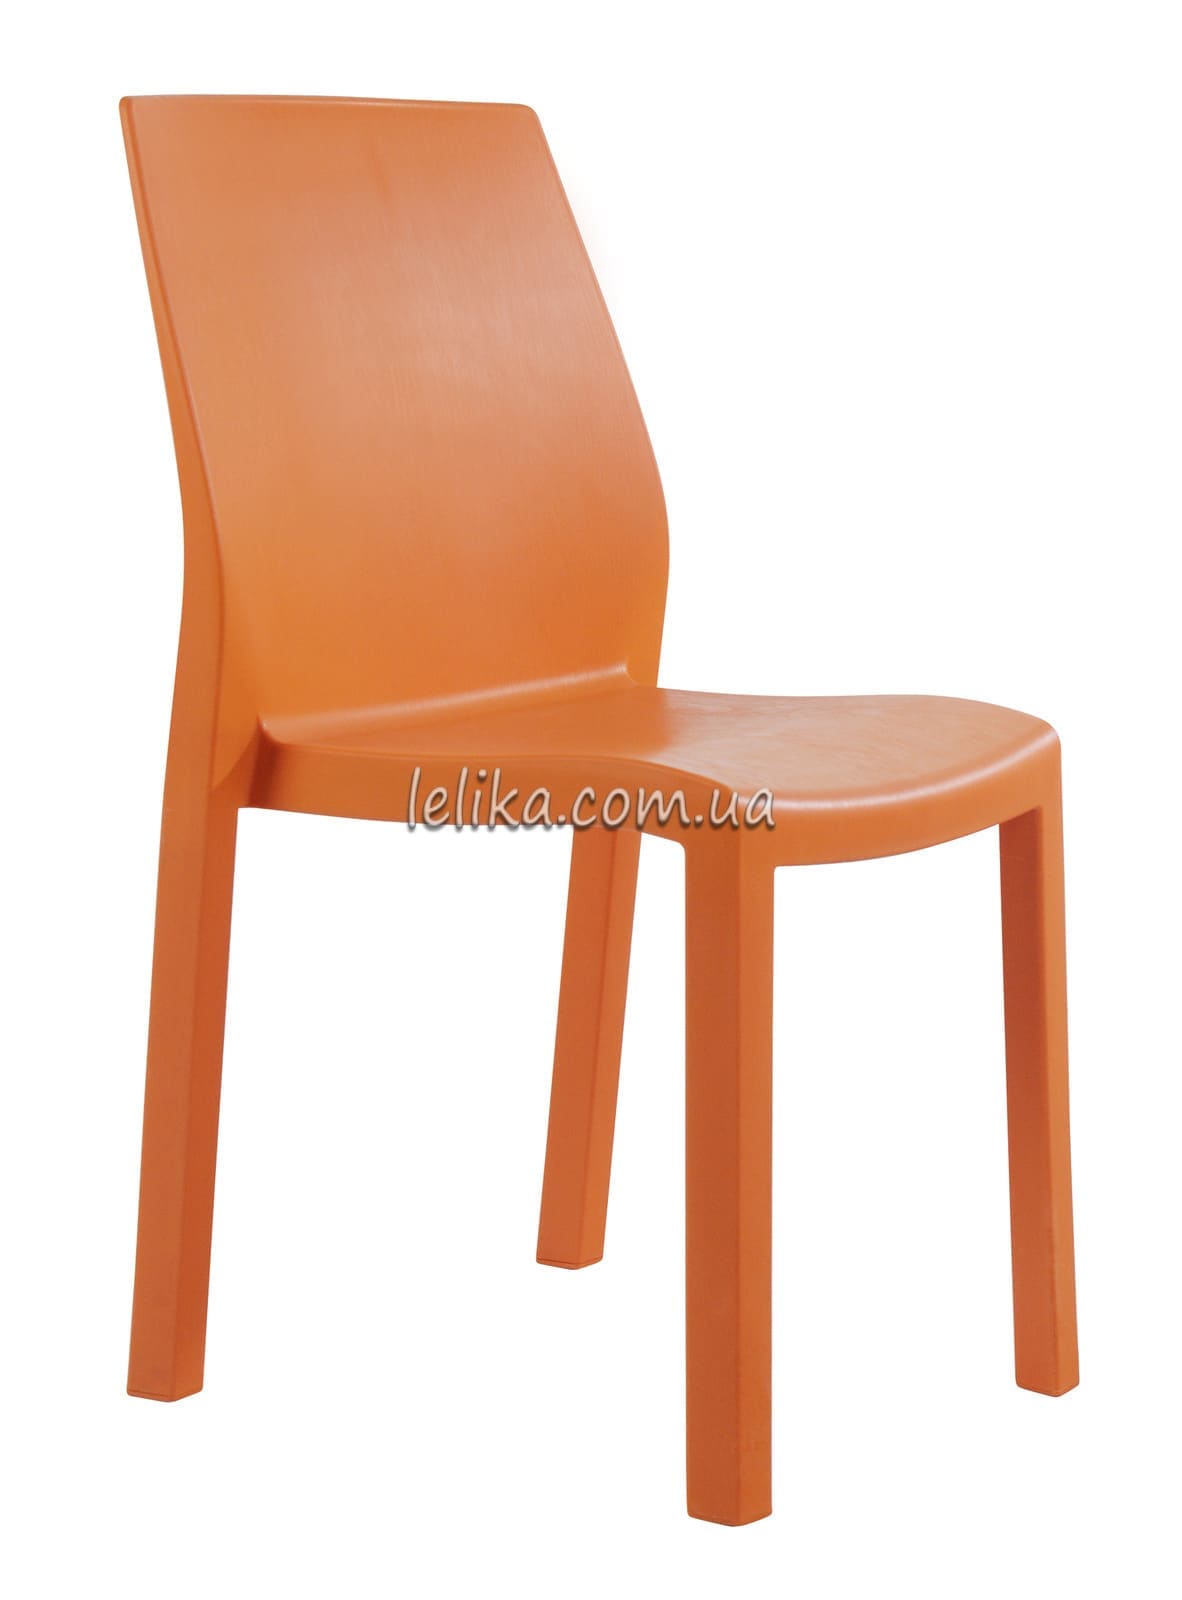 Кресло пластиковое все цвета, дизайн